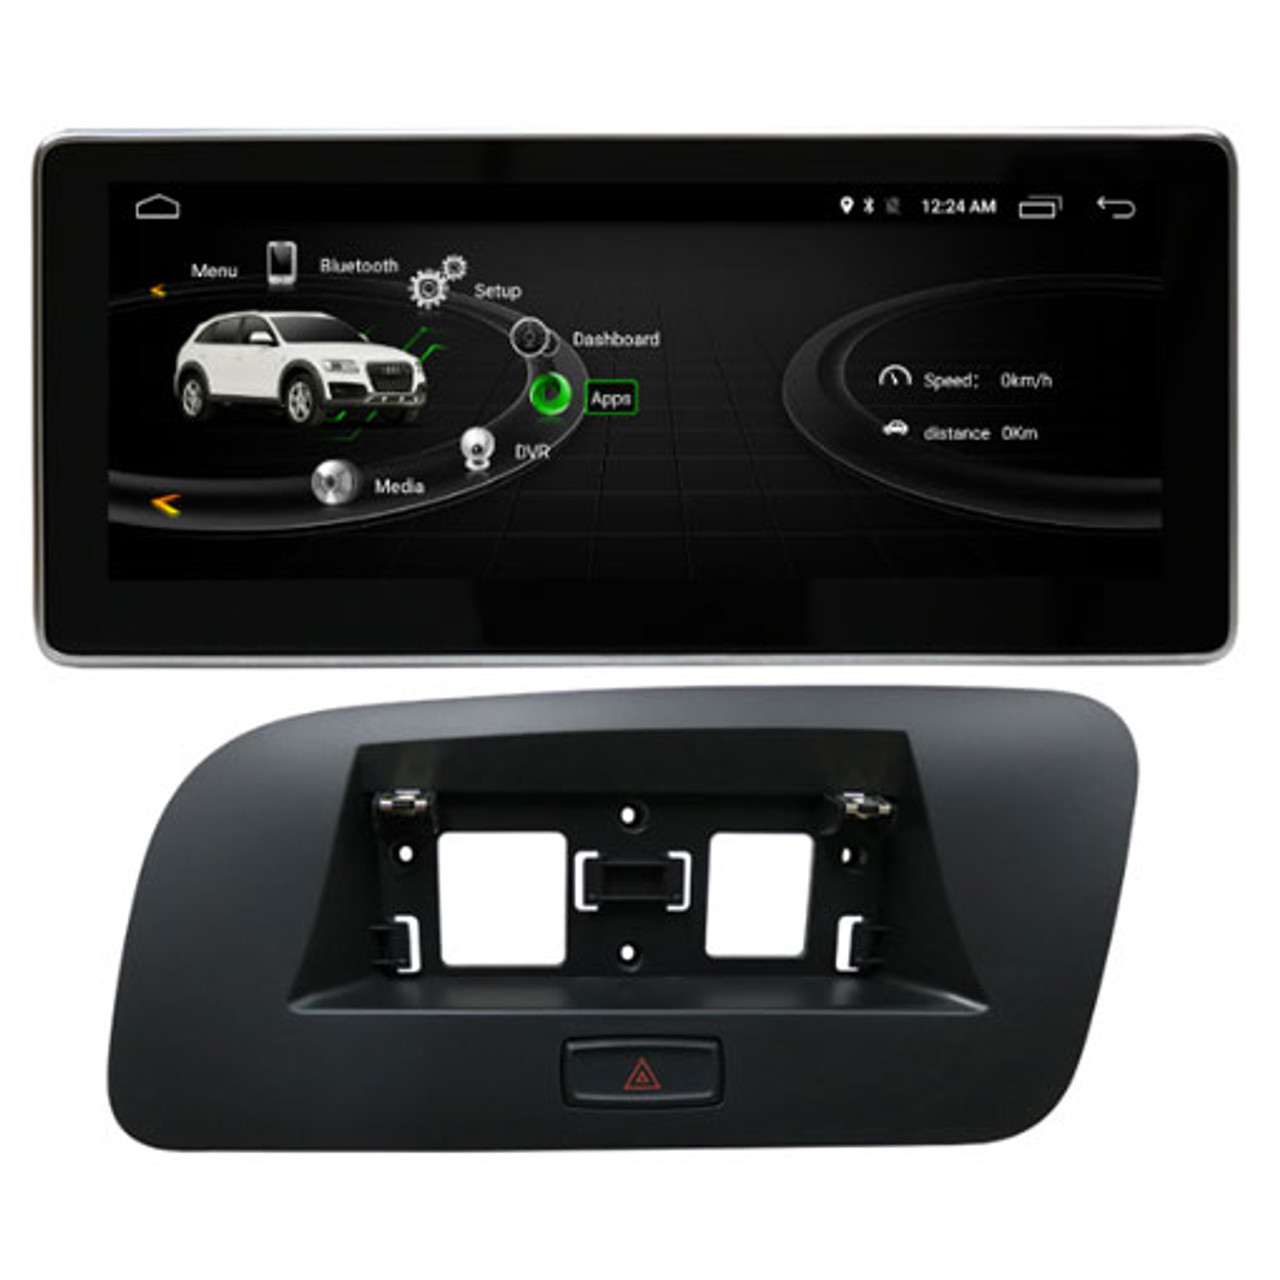 Audi Q5 10.25“ Android CarPlay radio navigation – Multigenus